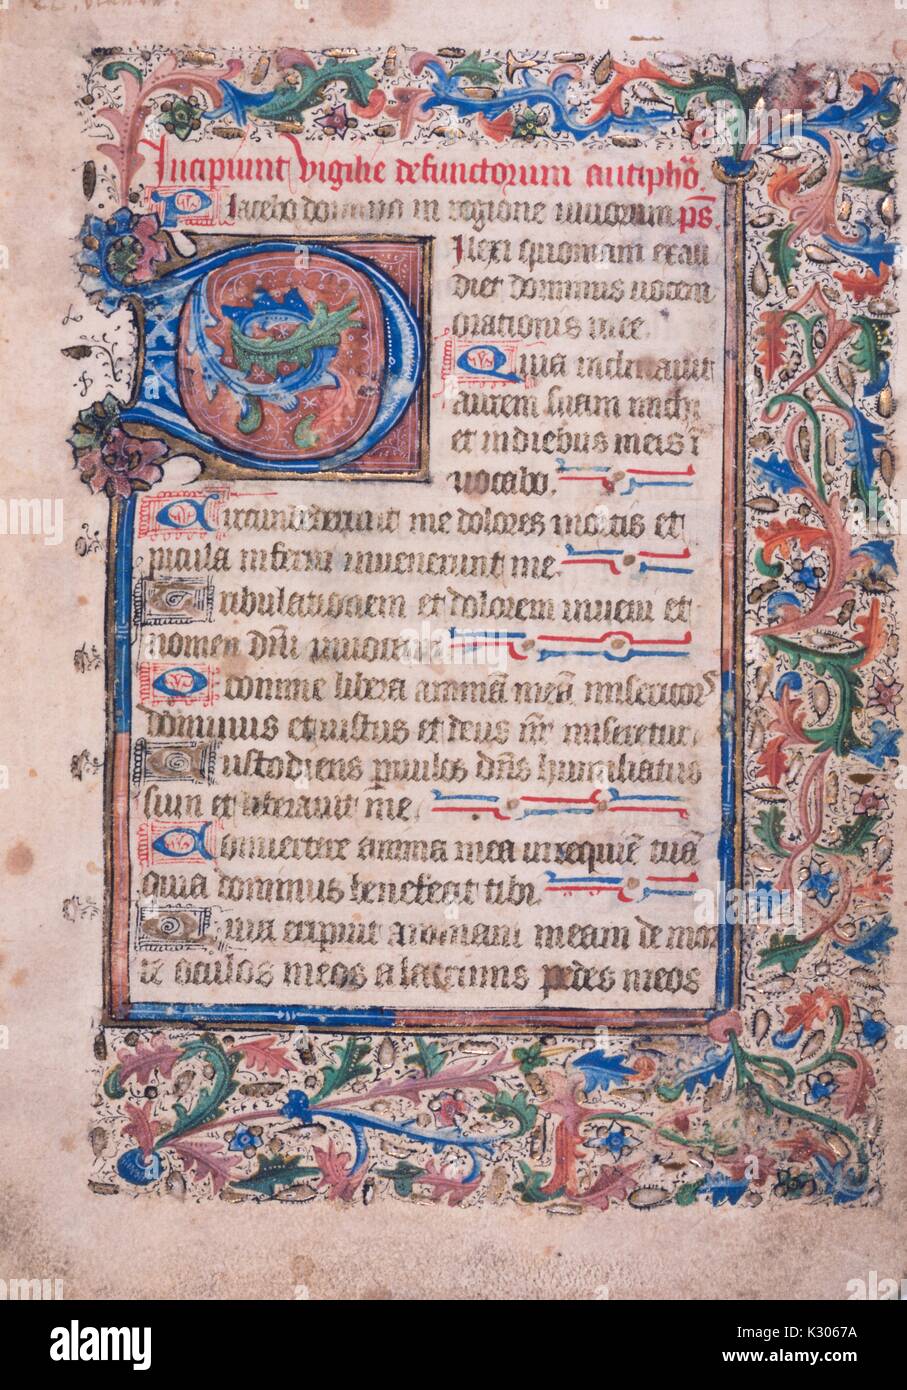 Manuscrit enluminé de la page 'Incipiunt vigilie defunctorum, ' imprimé en Amérique au 15e siècle, 1400. Banque D'Images